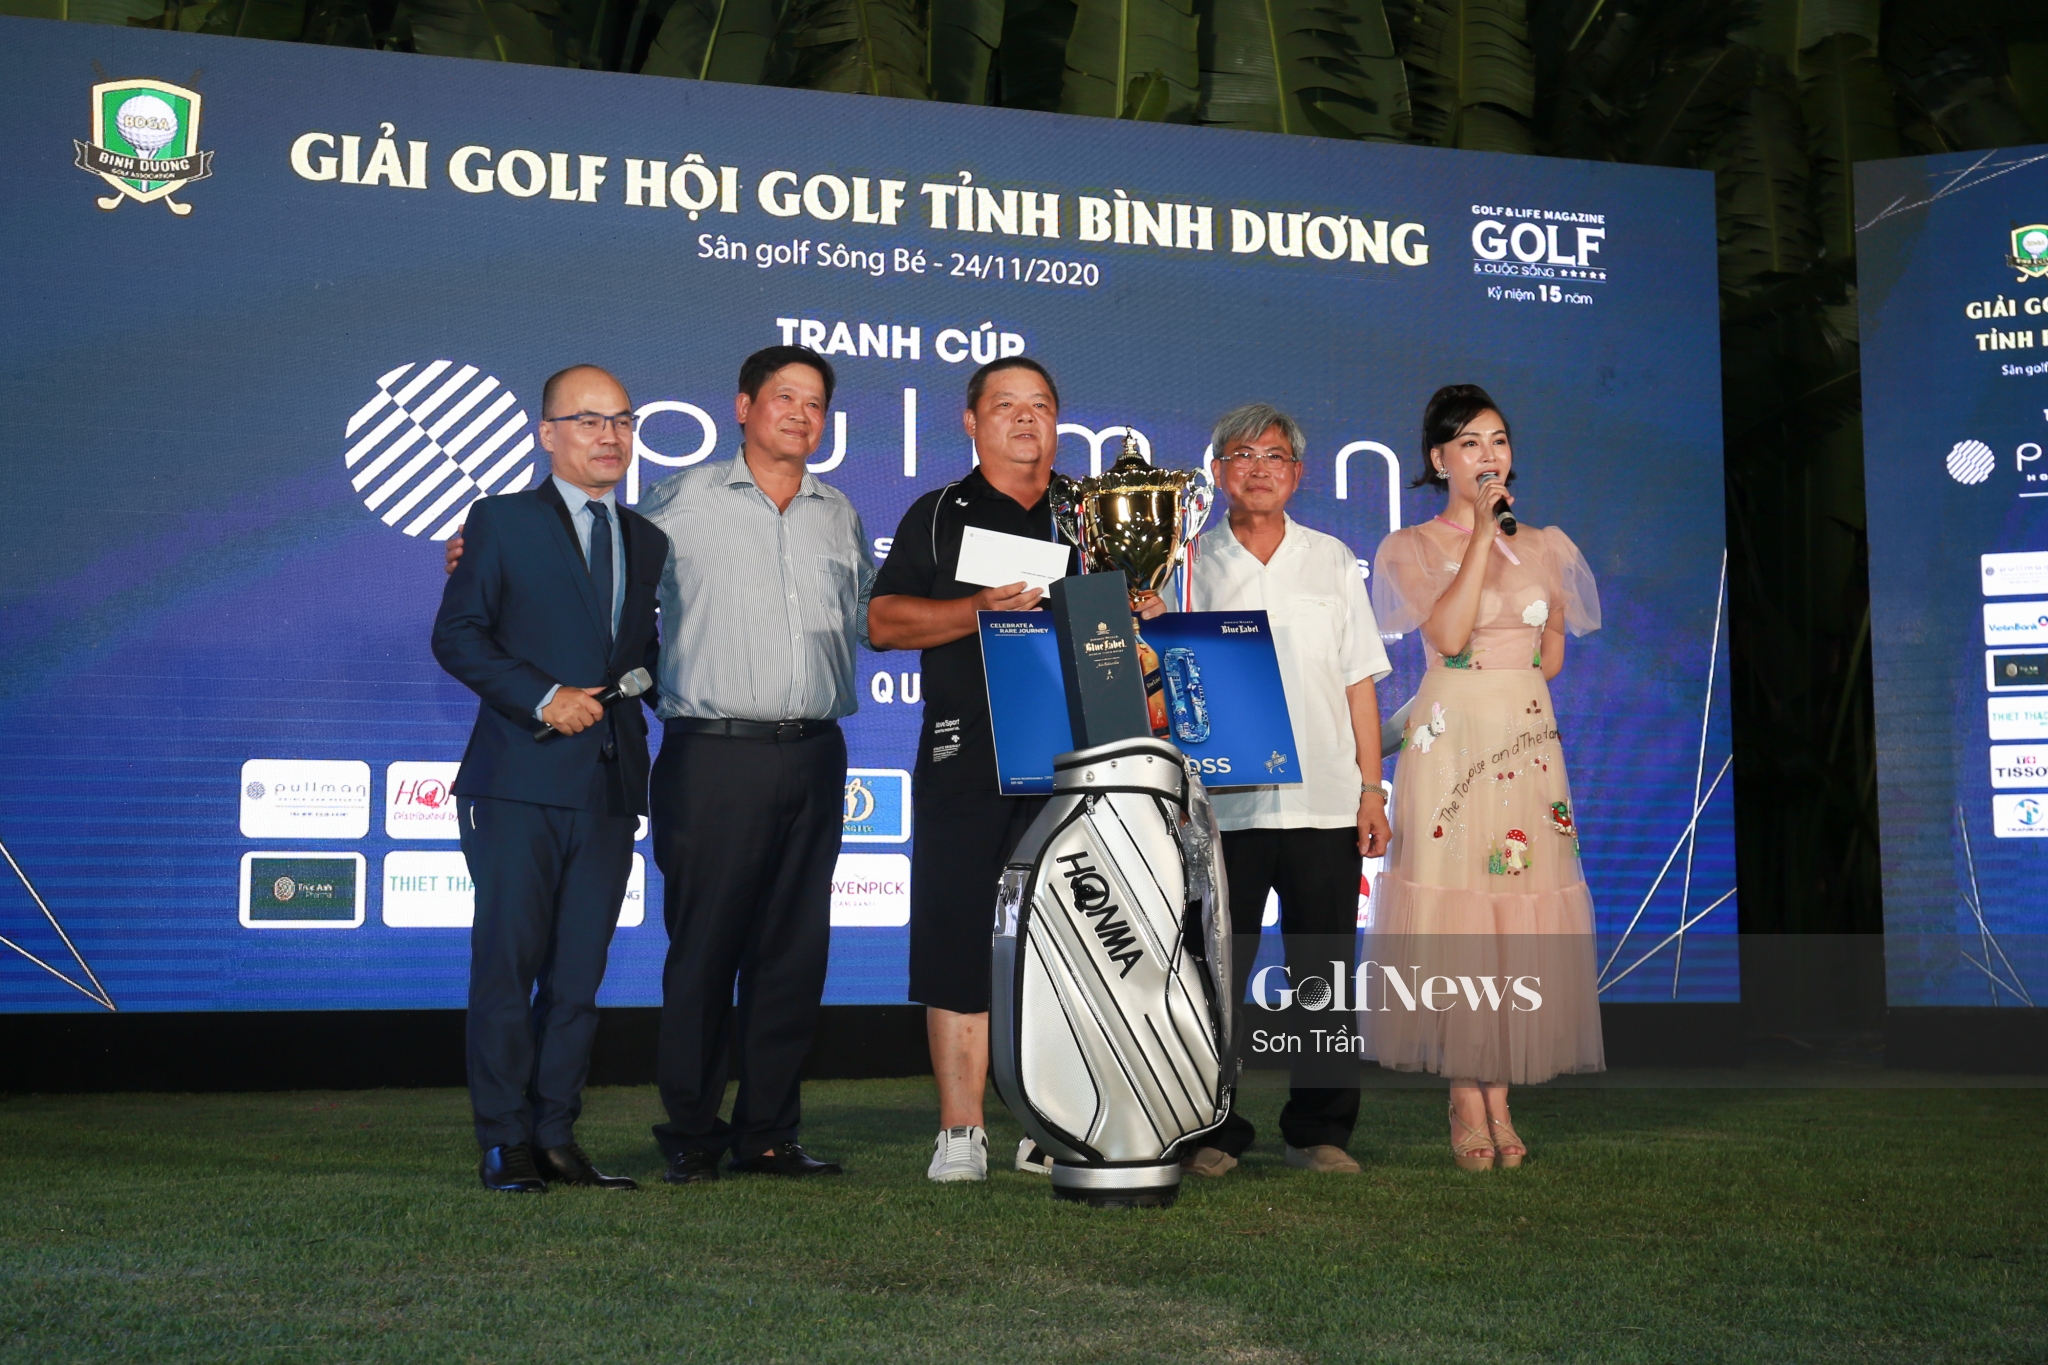 Golfer Yen Chin Wen vô địch Giải golf Hội golf tỉnh Bình Dương tranh cúp Pullman